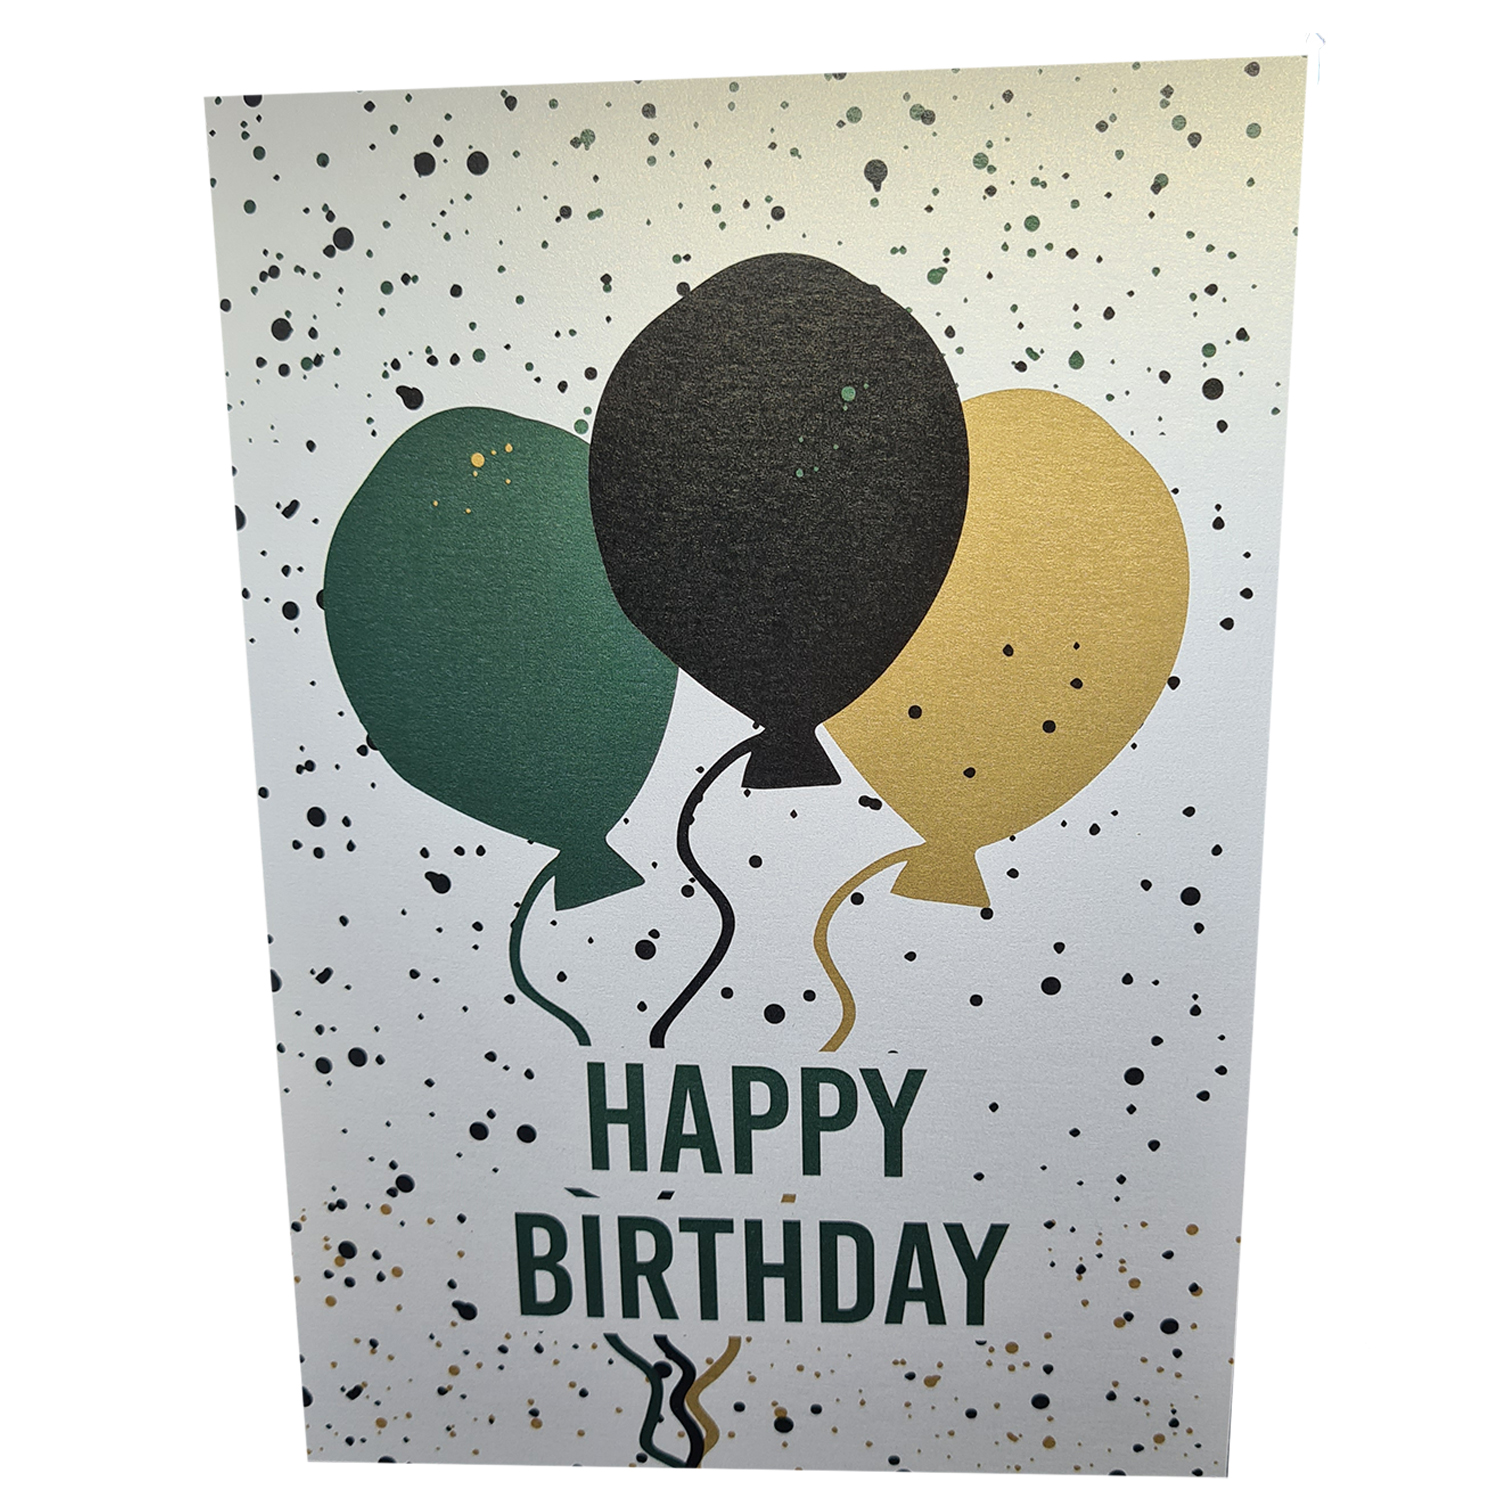 aan de andere kant, bitter Piepen Happy Birthday ballonnen – parelmoer – dubbele kaart A5 formaat - MERQ